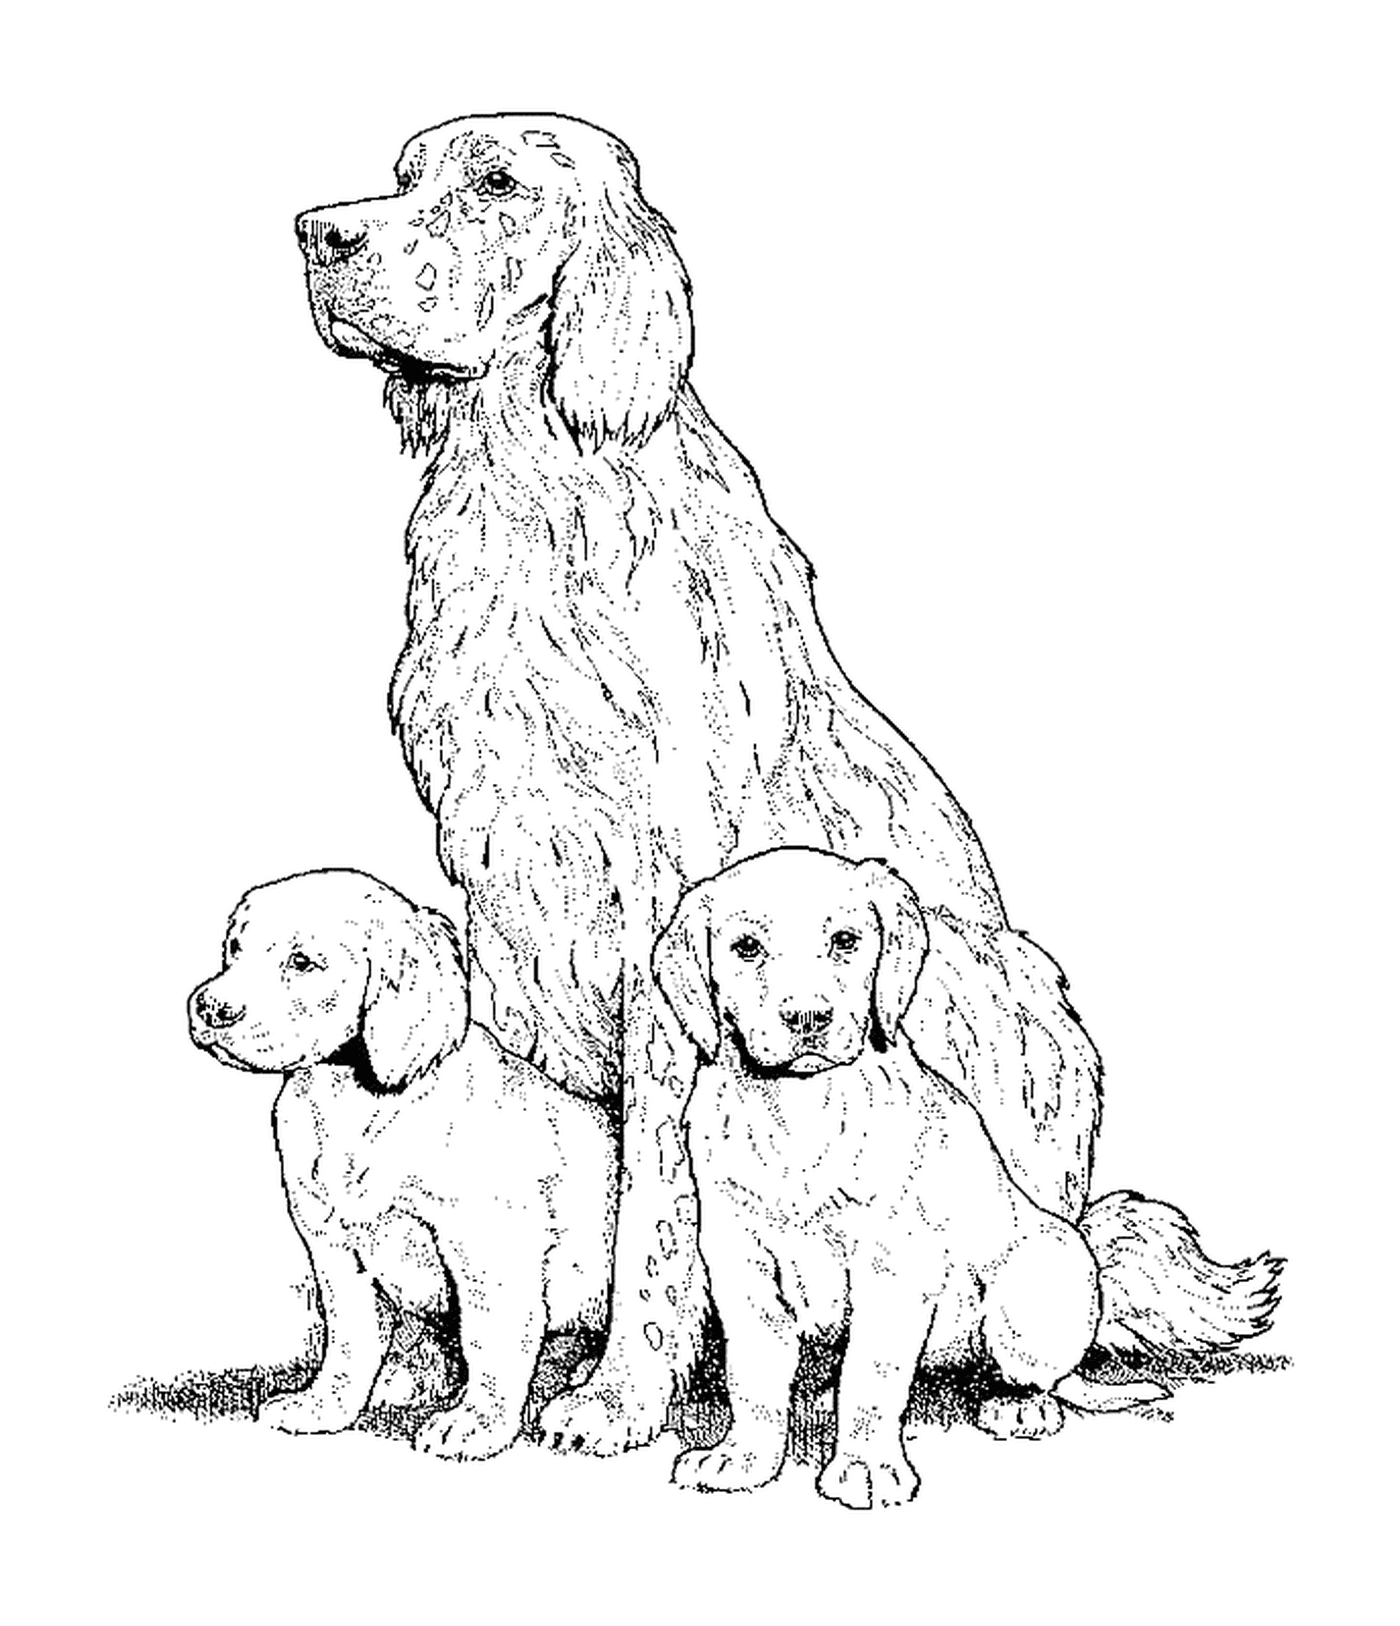  Un set de perros inglés adulto y dos cachorros sentados en el suelo 